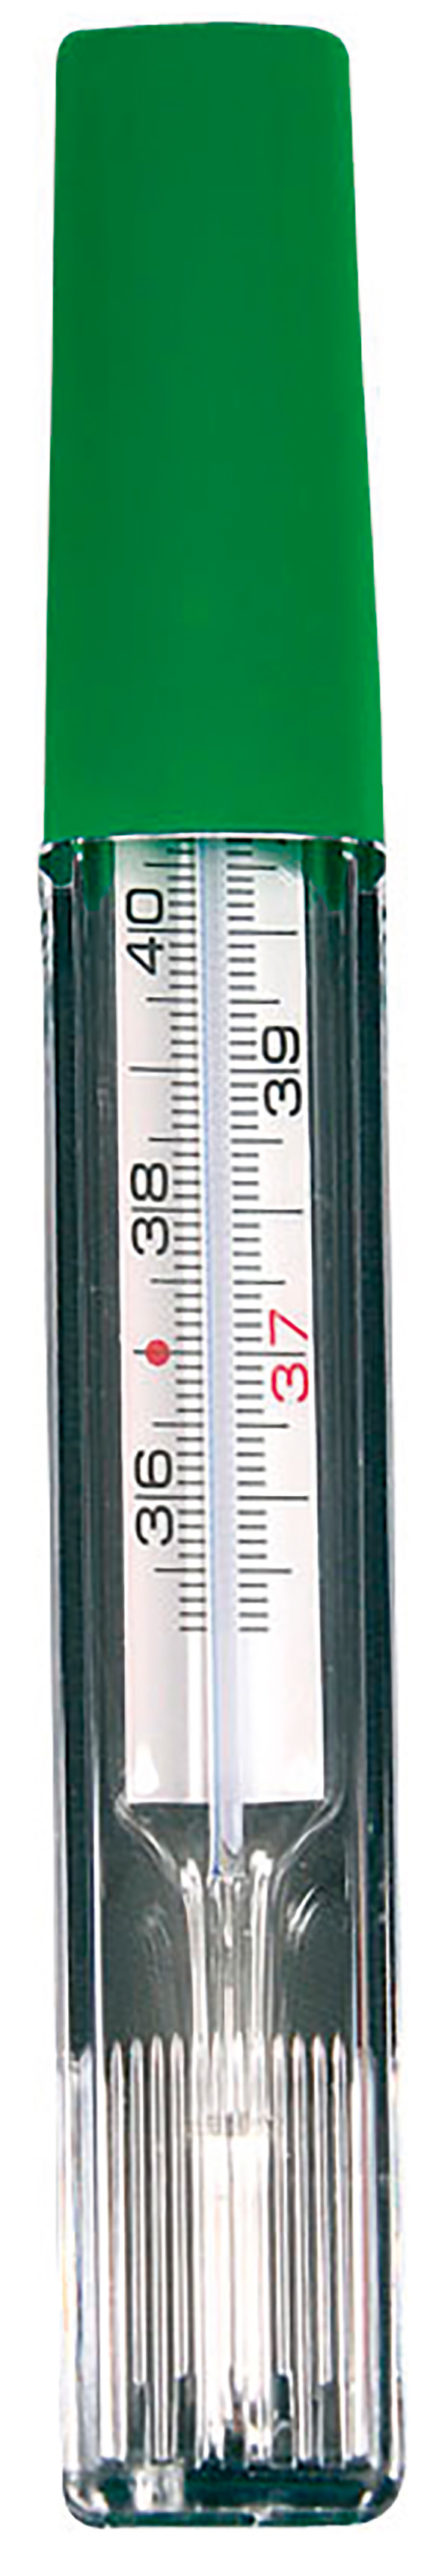 Thermomètre au gallium - Medicaffaires